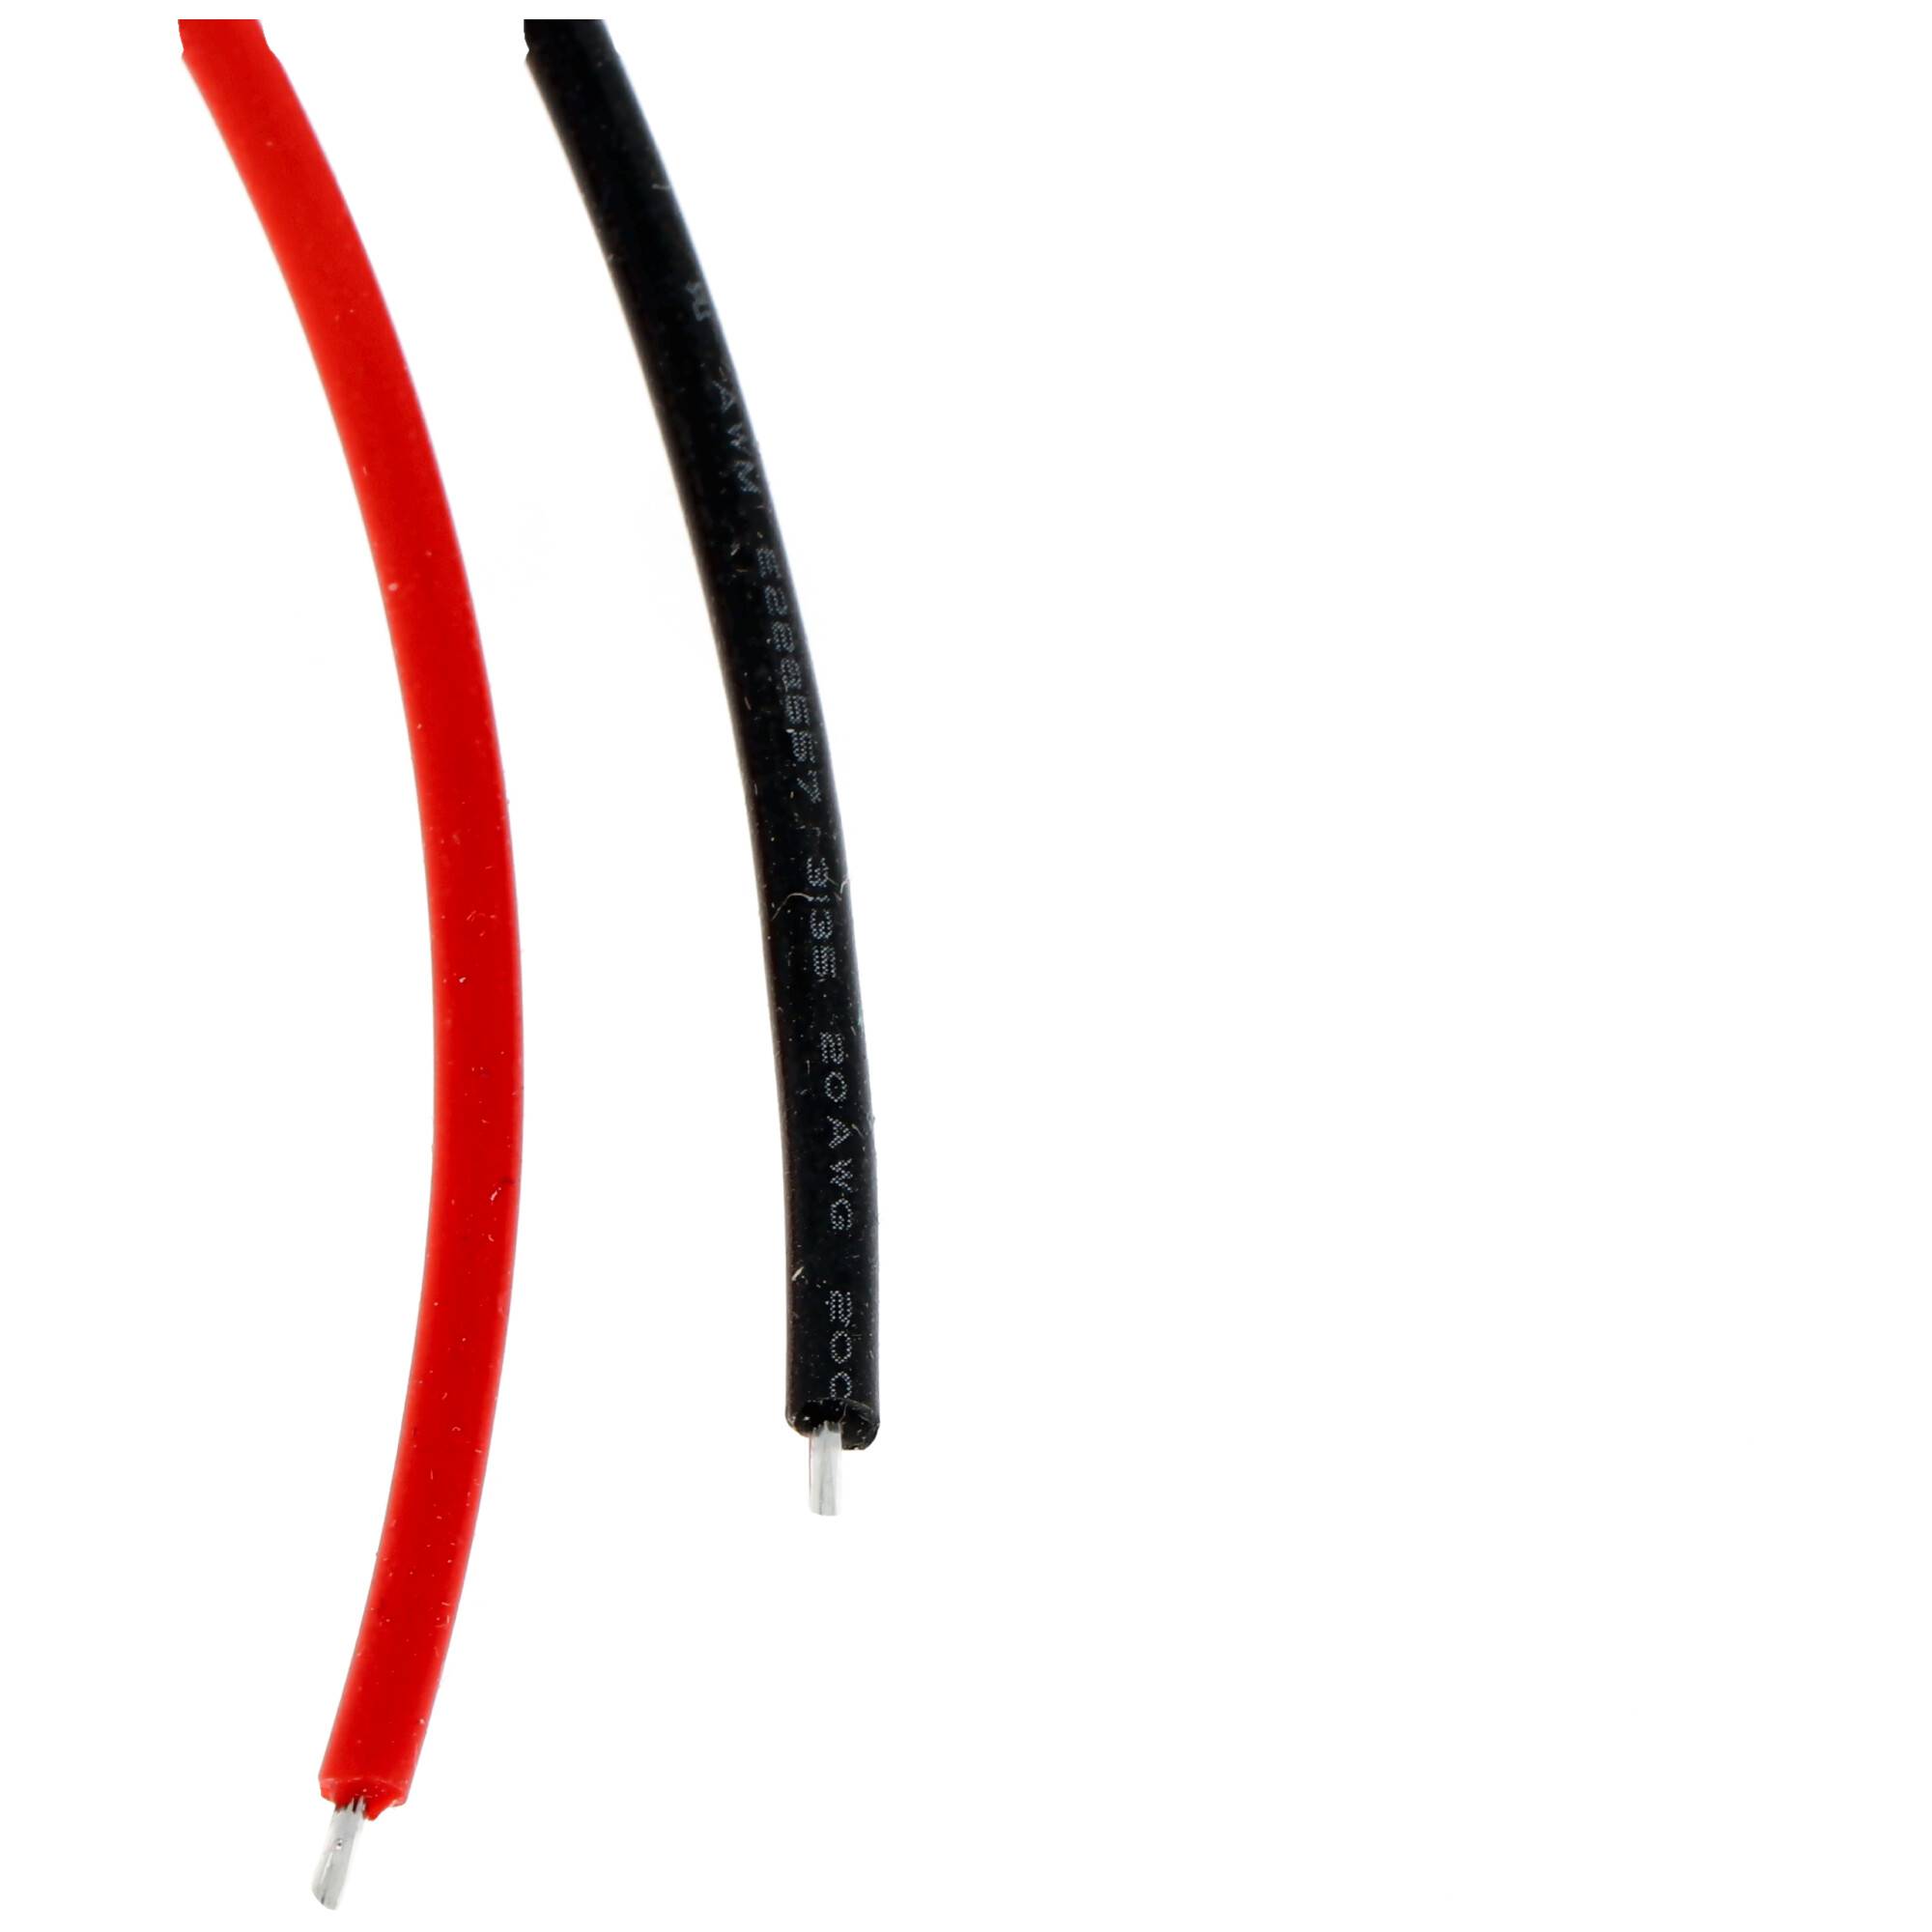 Kabel mit Tamiya Stecker Länge 14 cm